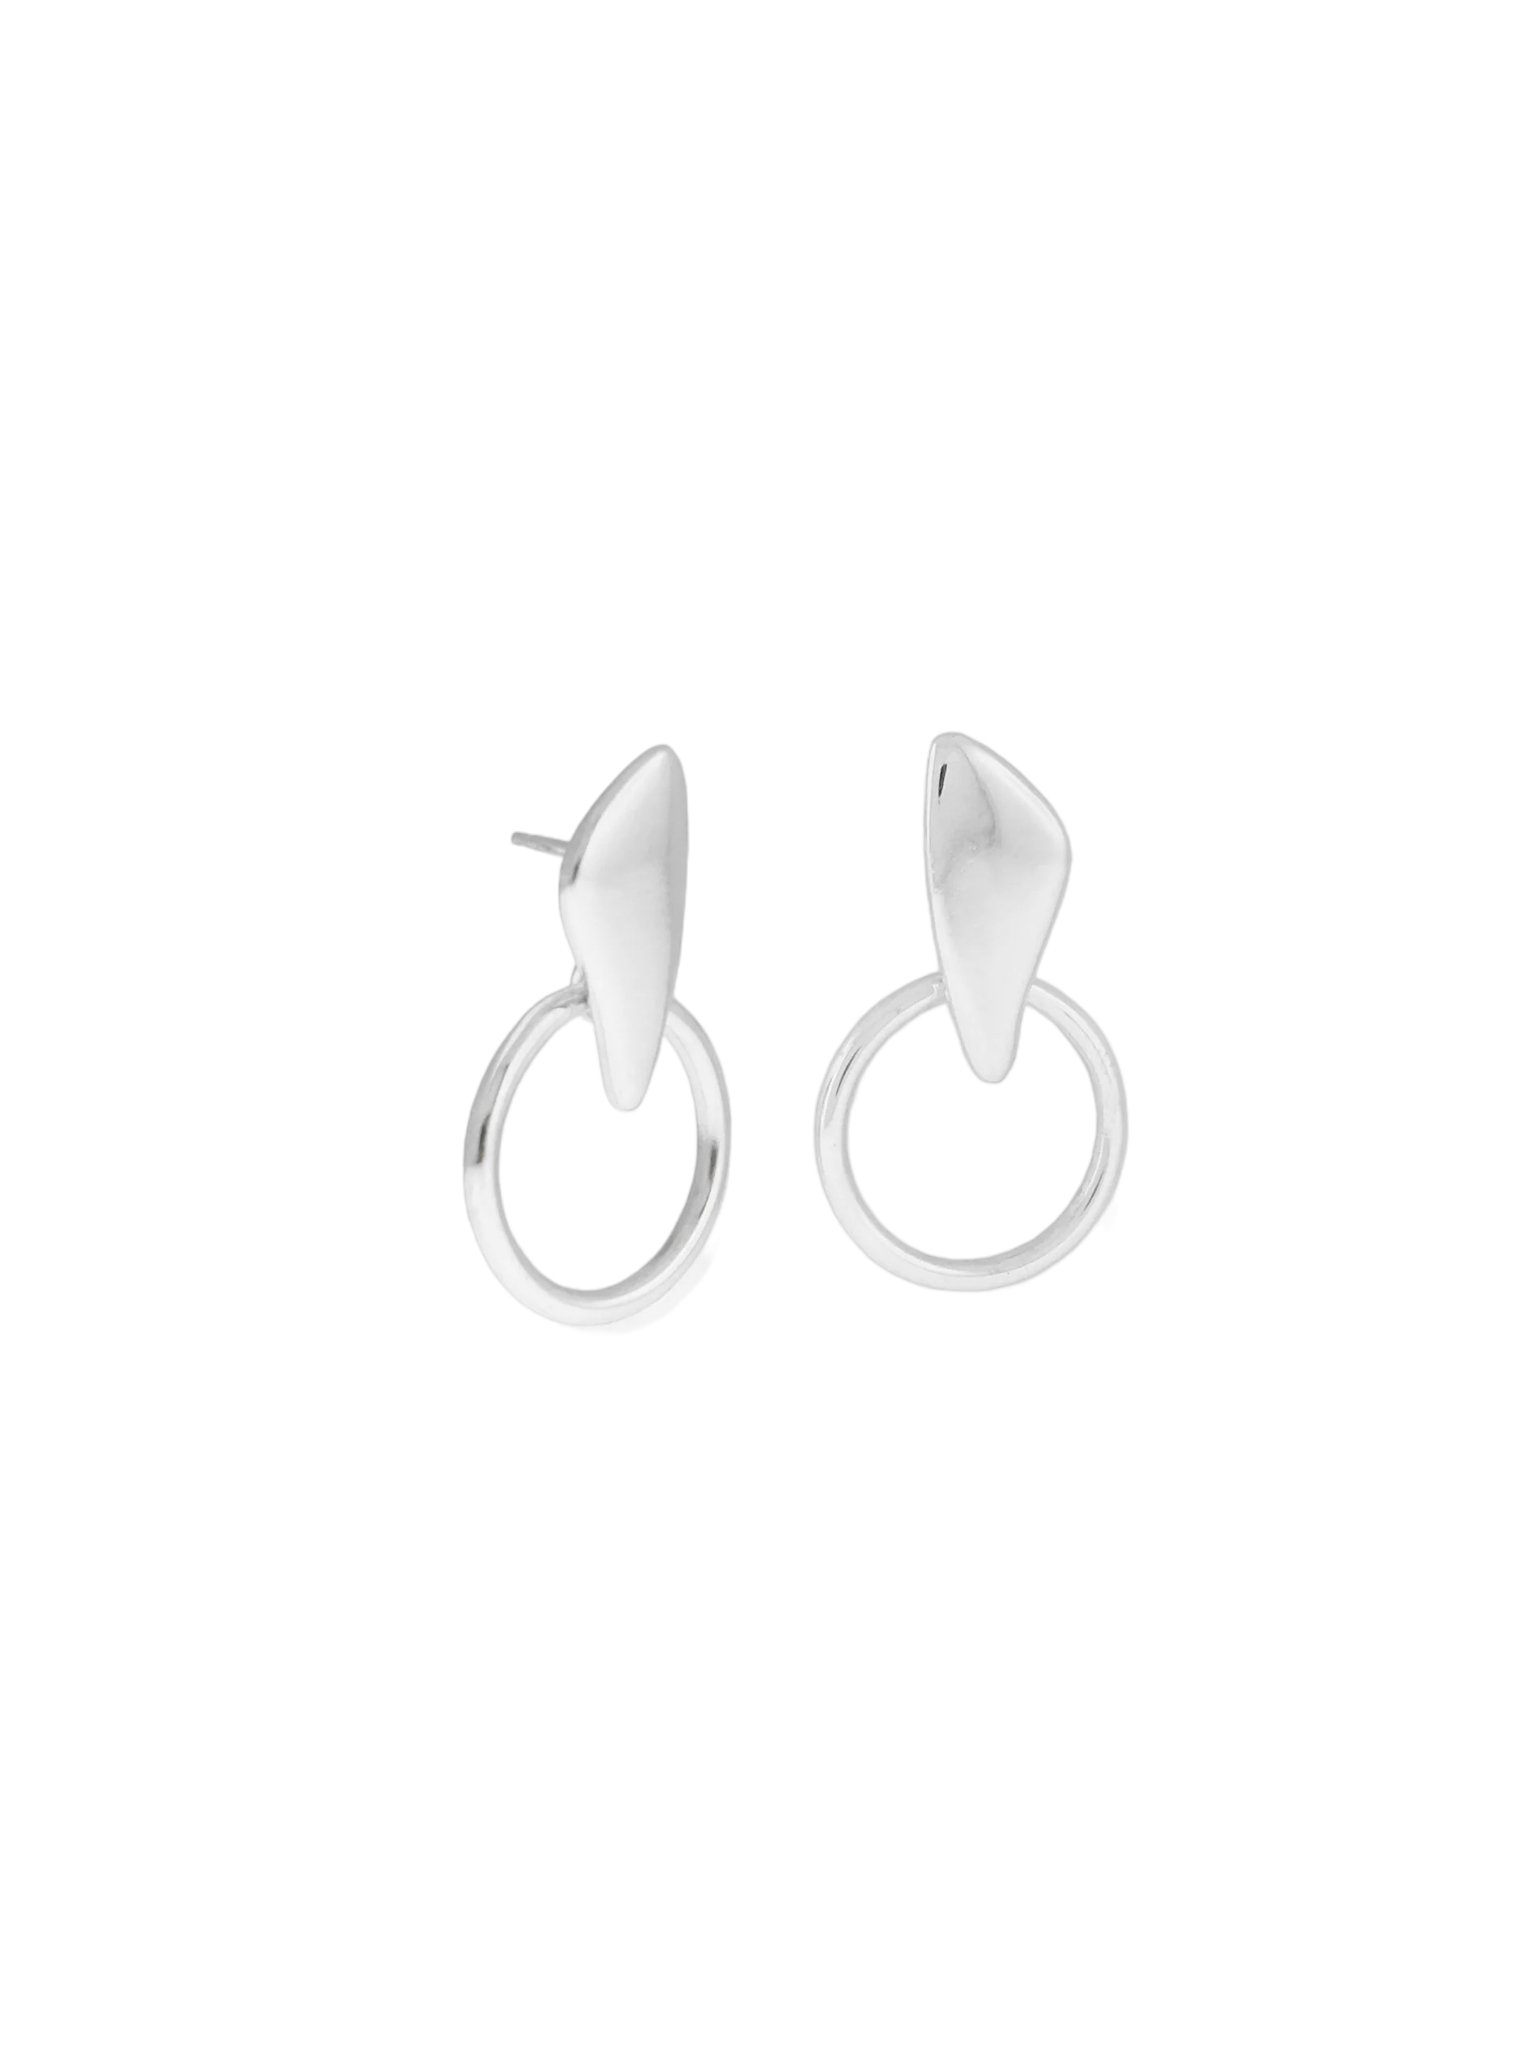 Petal door knocker earrings